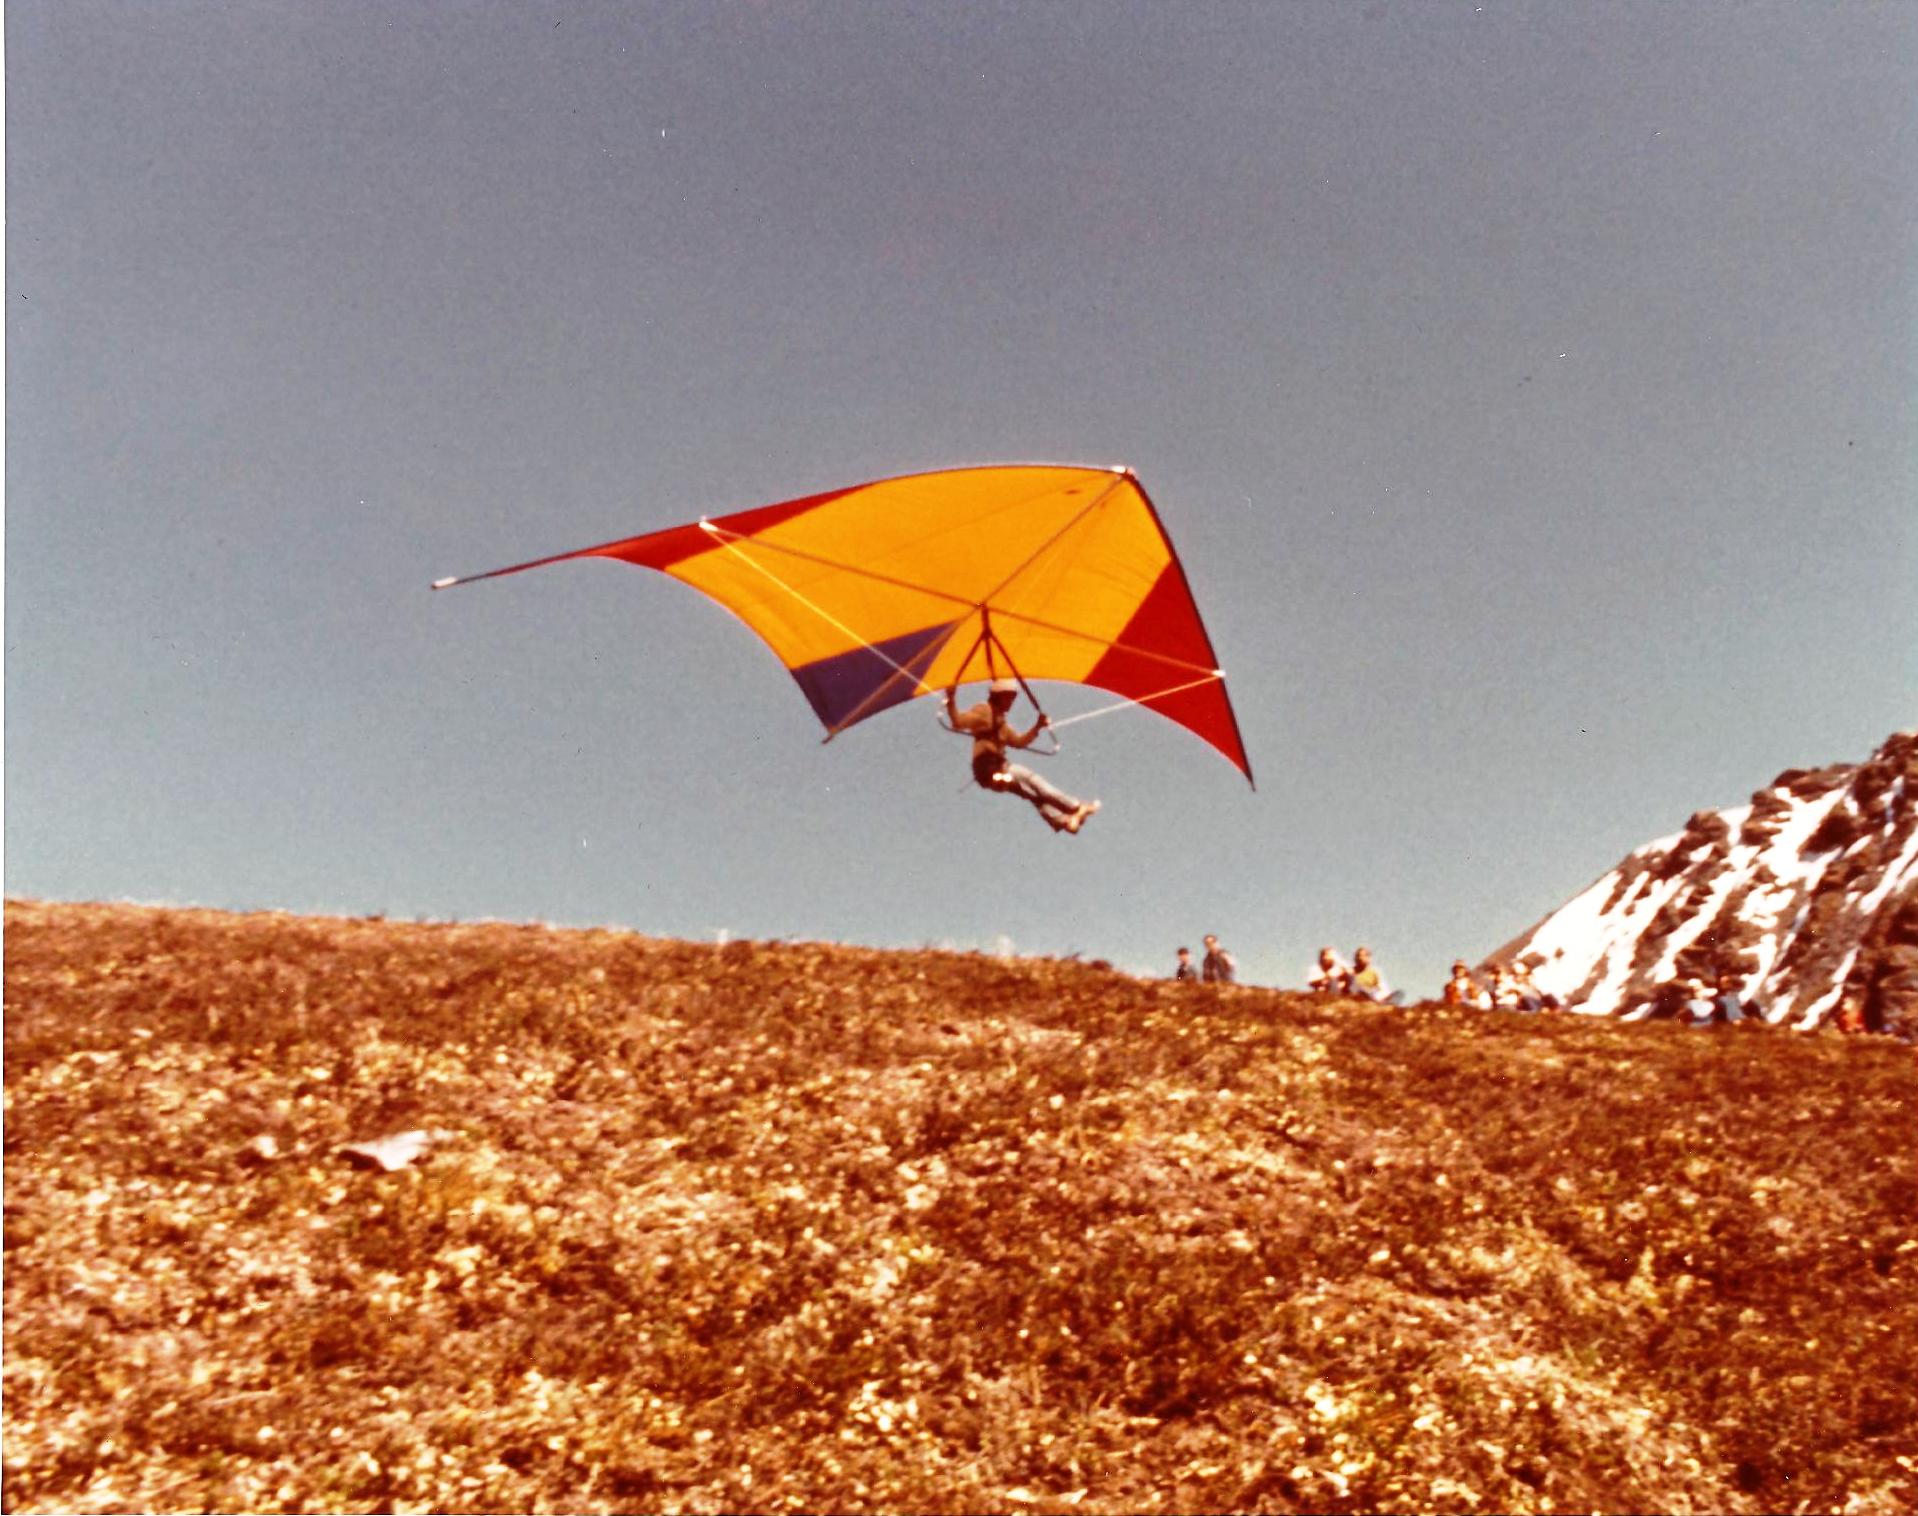 bill-sheka-seagull-3-takeoff-from-hatchers-pass-alaska-july-4-1975_0